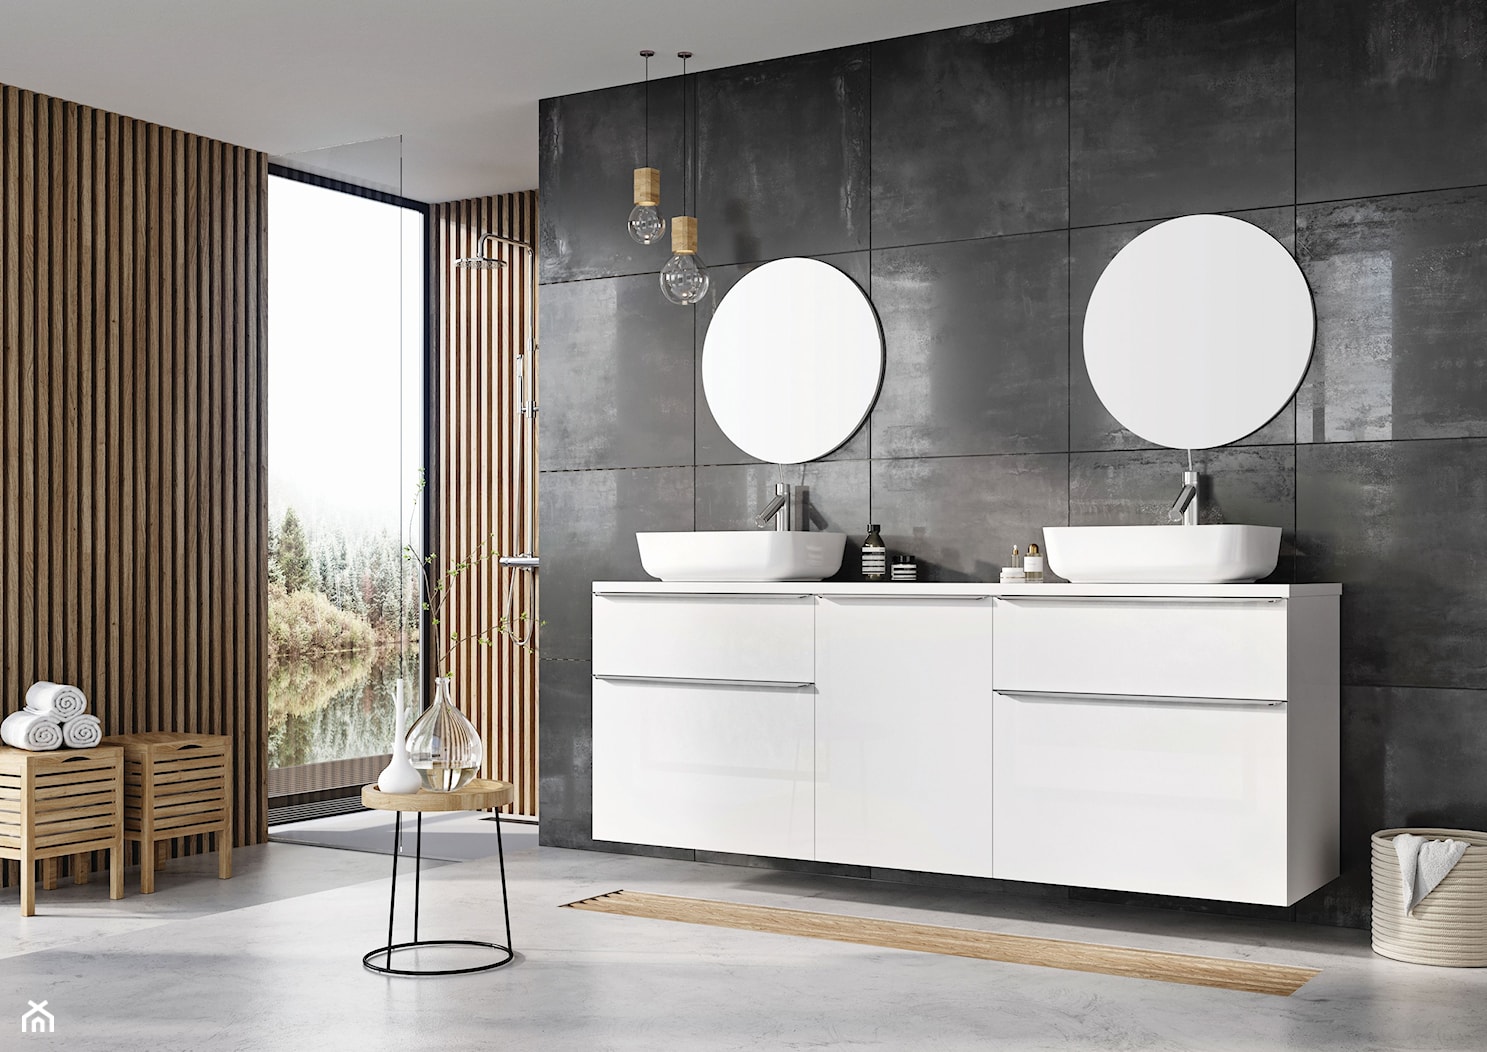 Lofty - Średnia z lustrem z dwoma umywalkami łazienka z oknem, styl nowoczesny - zdjęcie od Elita - Homebook